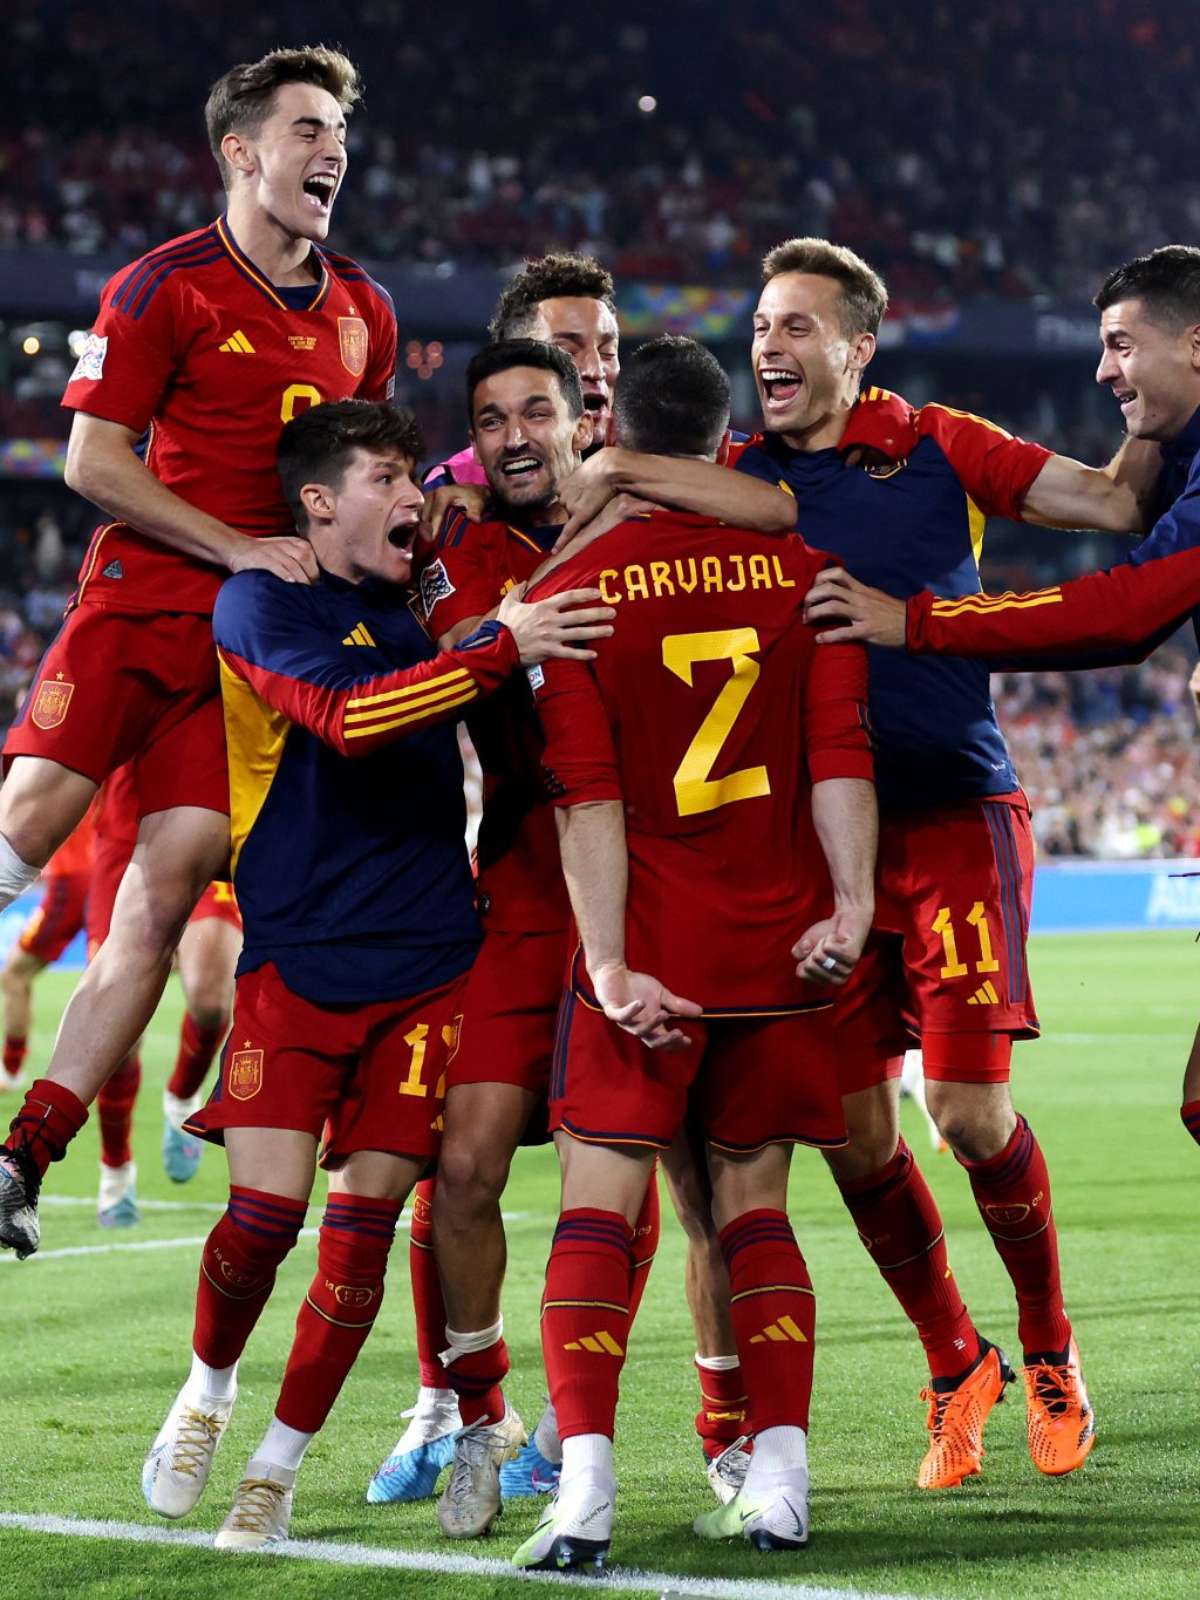 Espanha marca no fim, vence Portugal e avança à semifinal da Liga